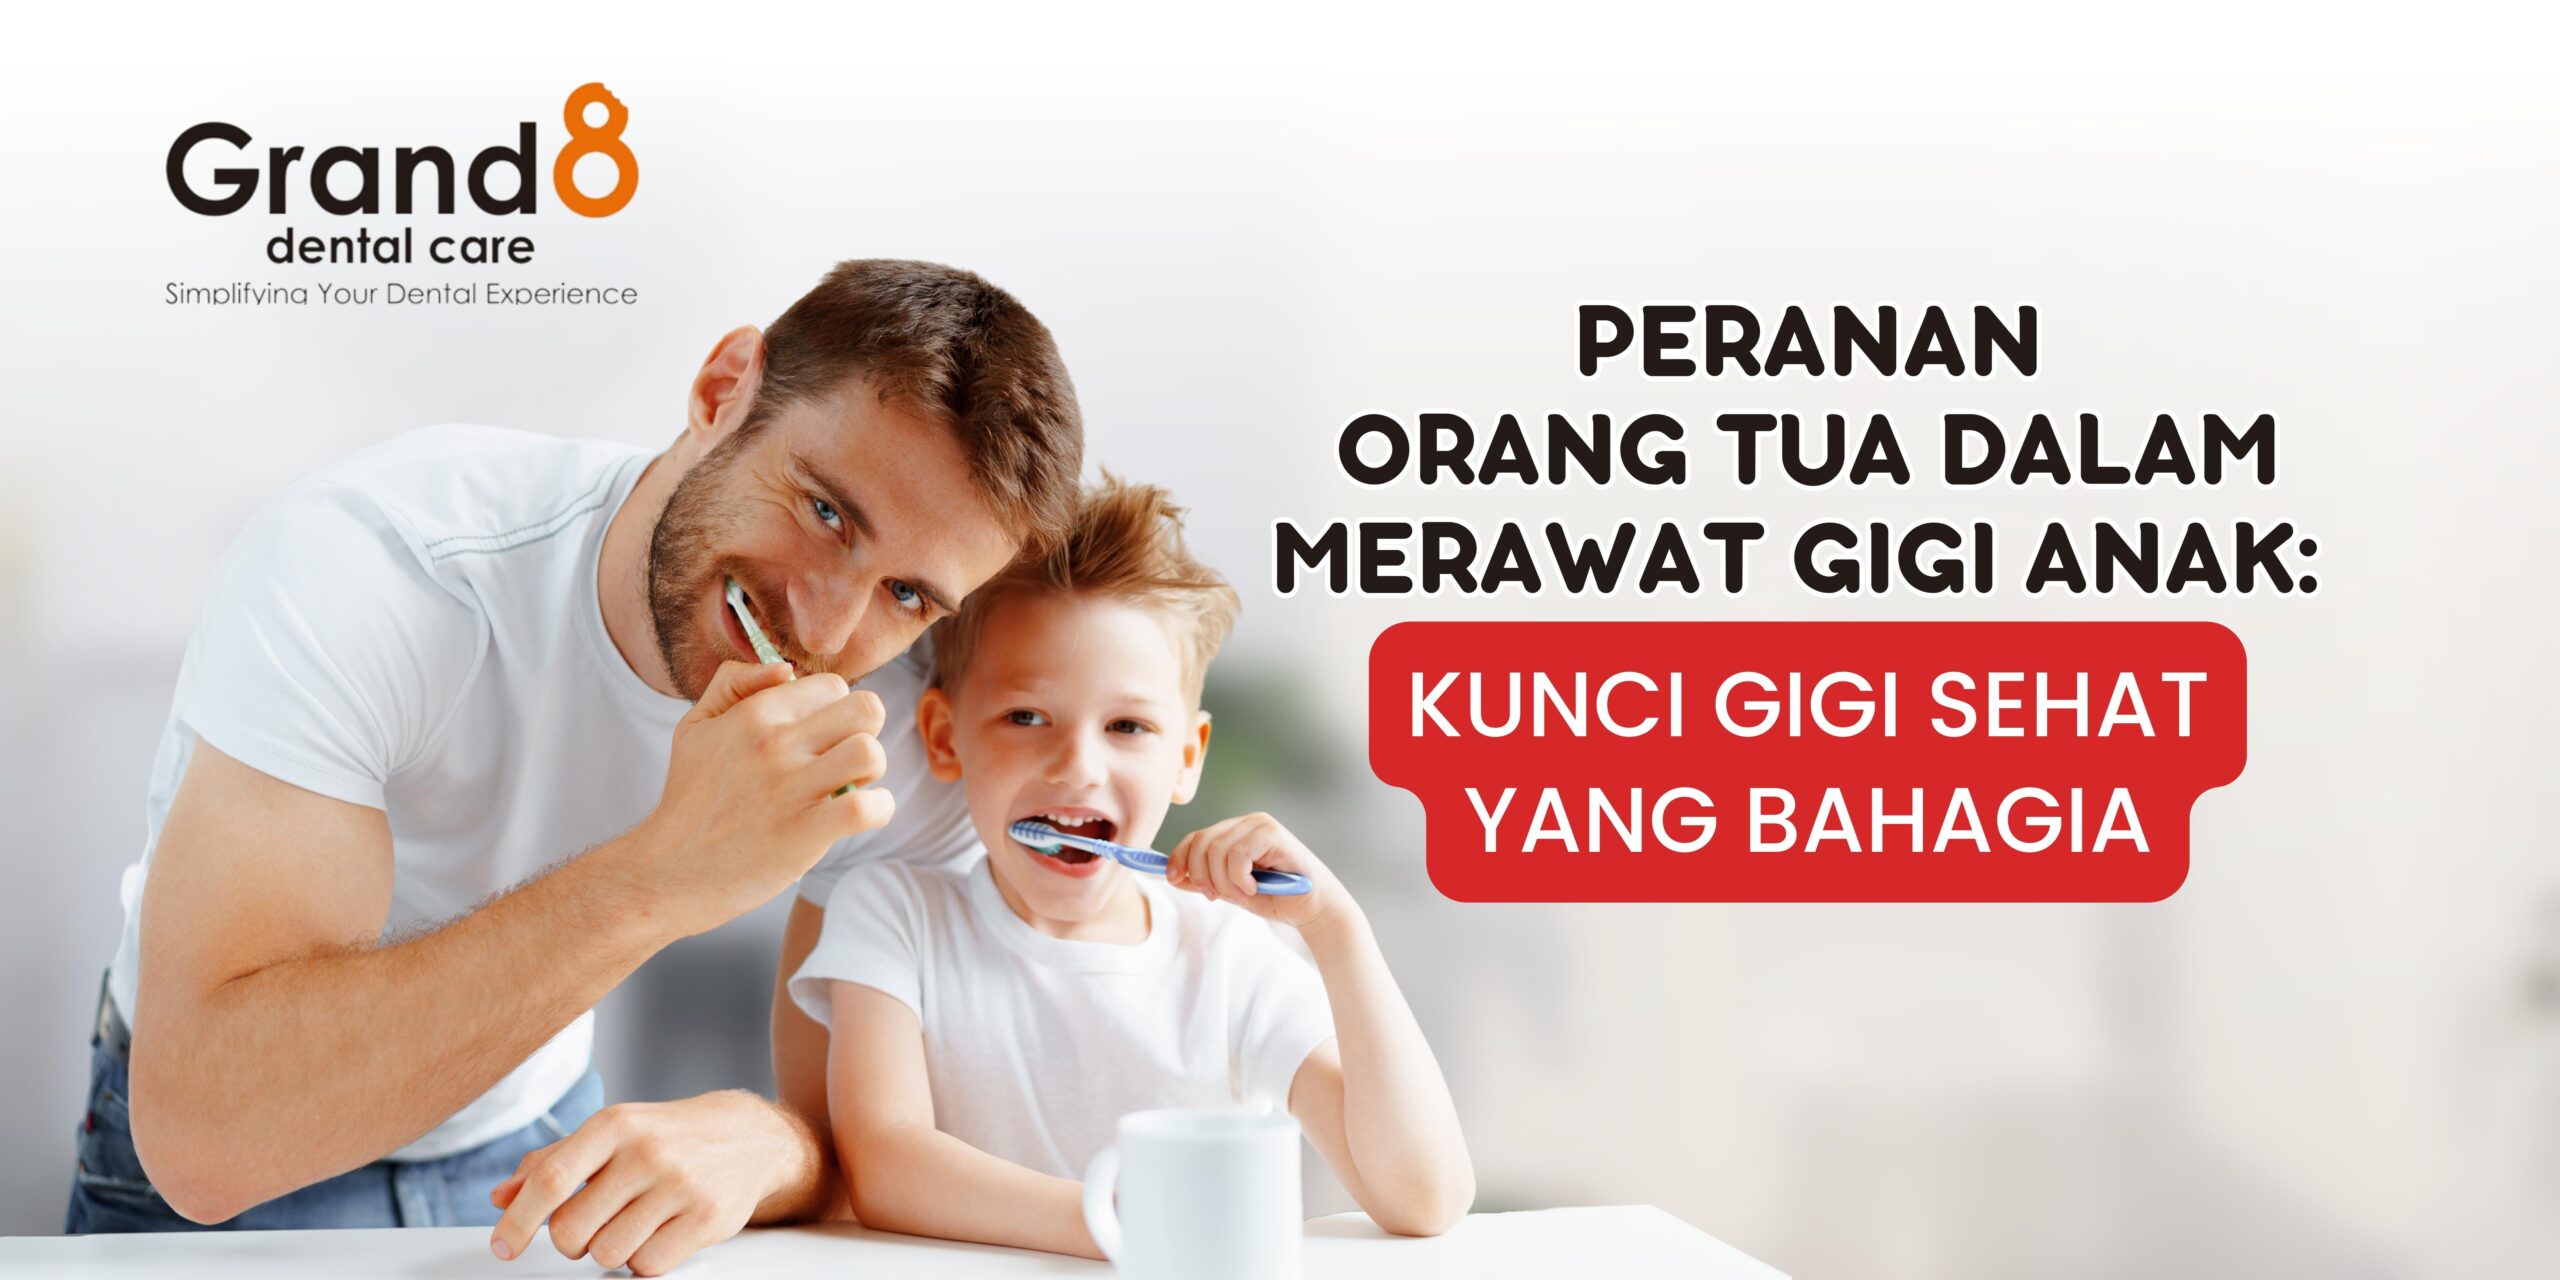 Ayah dan anak tersenyum sambil menggosok gigi bersama, menjelaskan pentingnya merawat gigi anak.